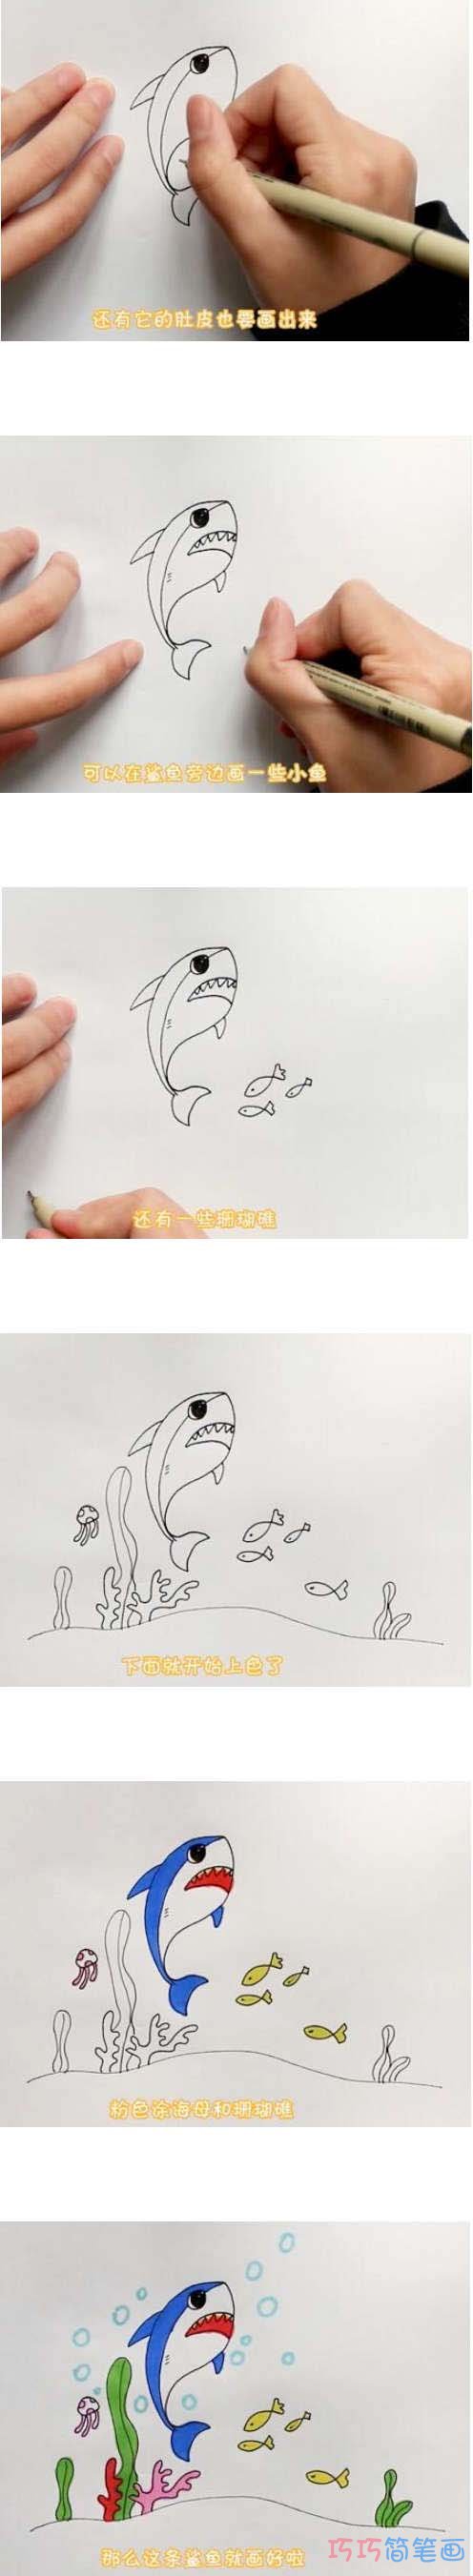 教你一步一步绘画跳跃鲨鱼简笔画涂颜色简单